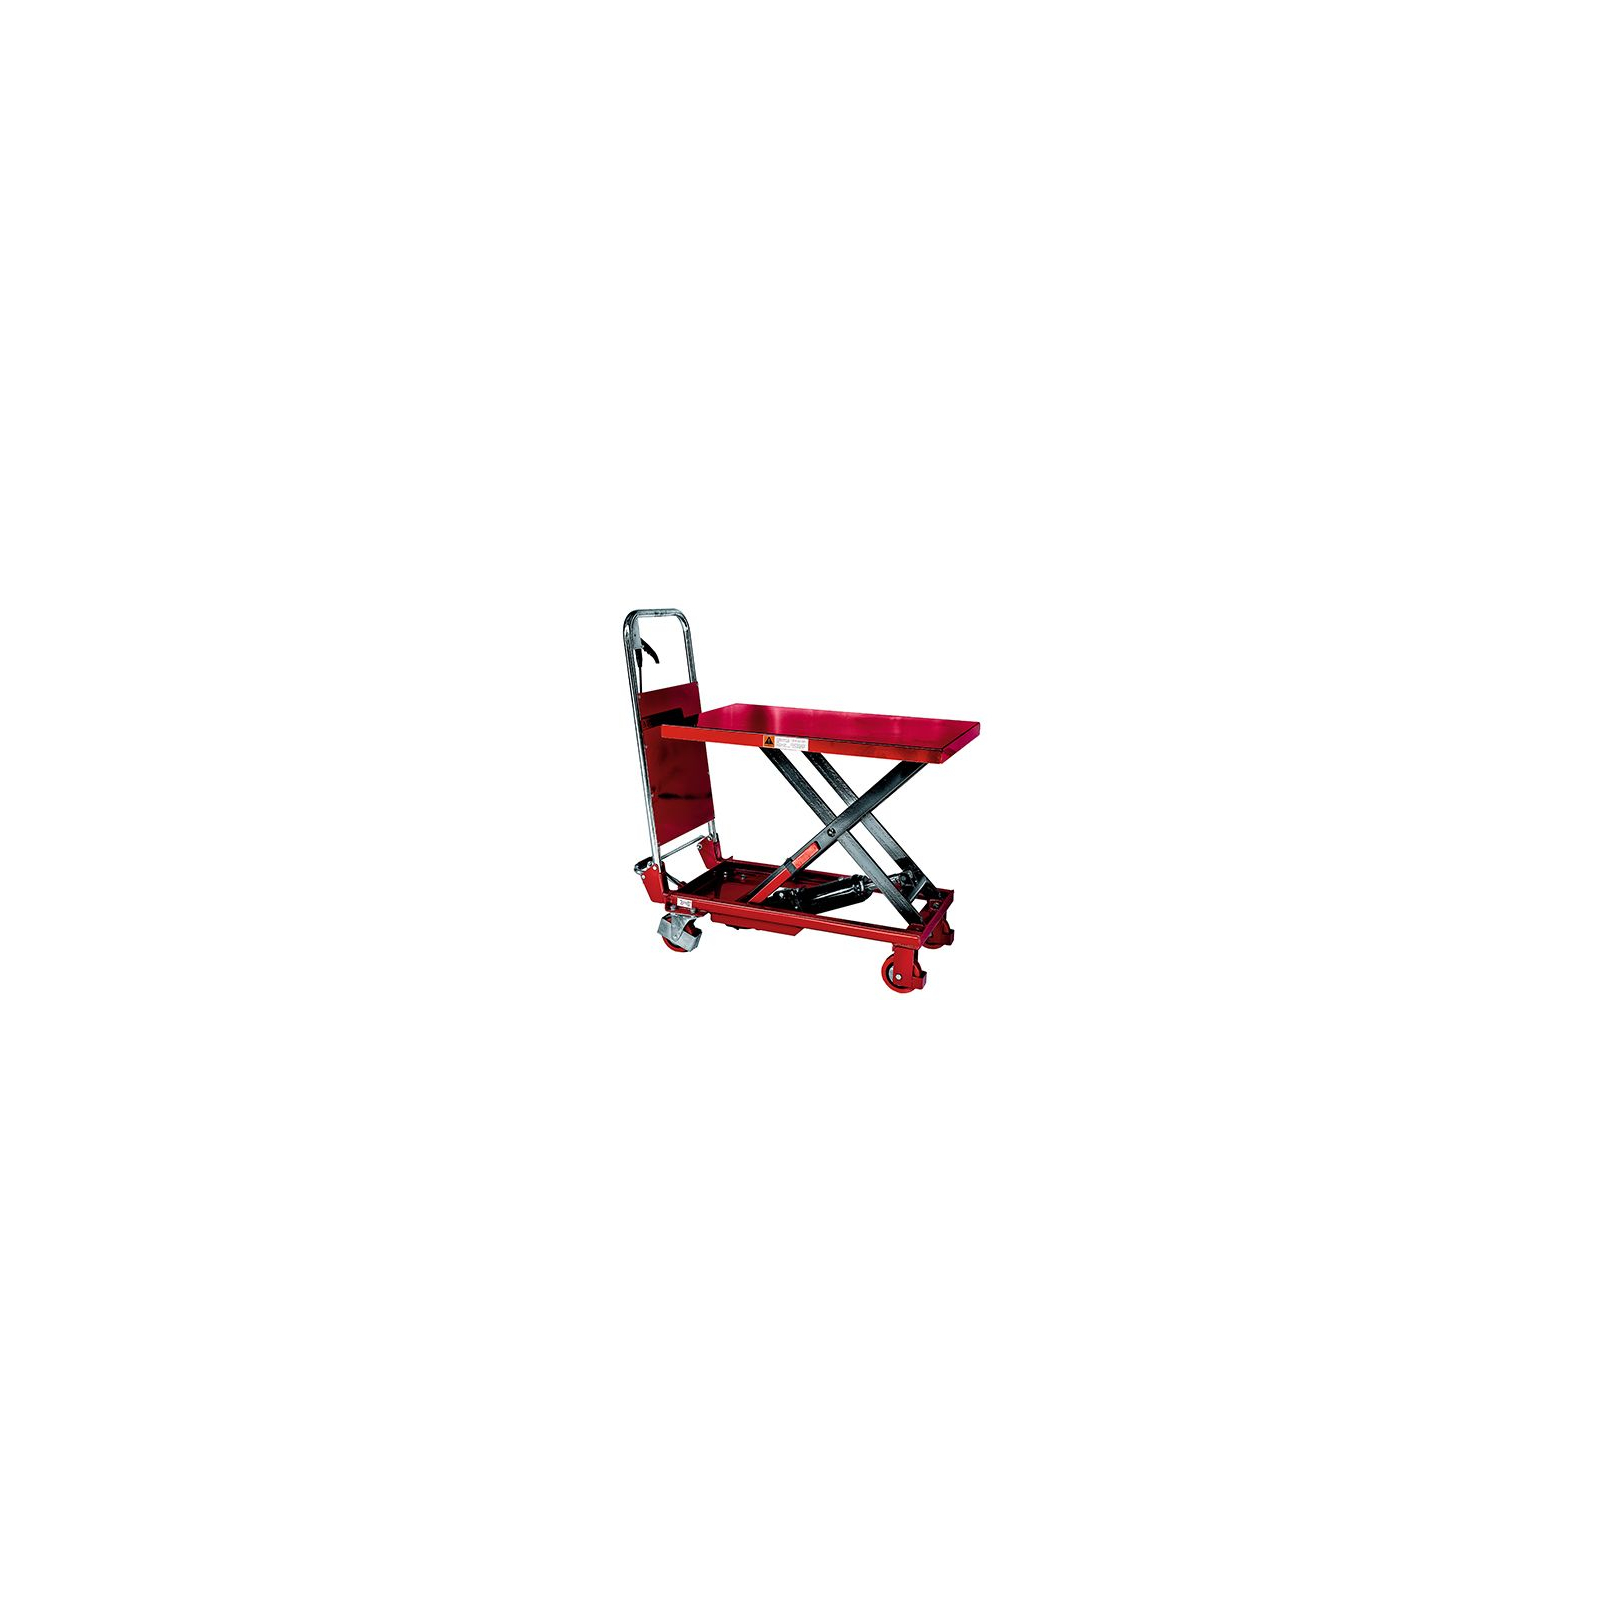 Стол подъемный гидравлический Skiper SKT 1500 Profi (975720)